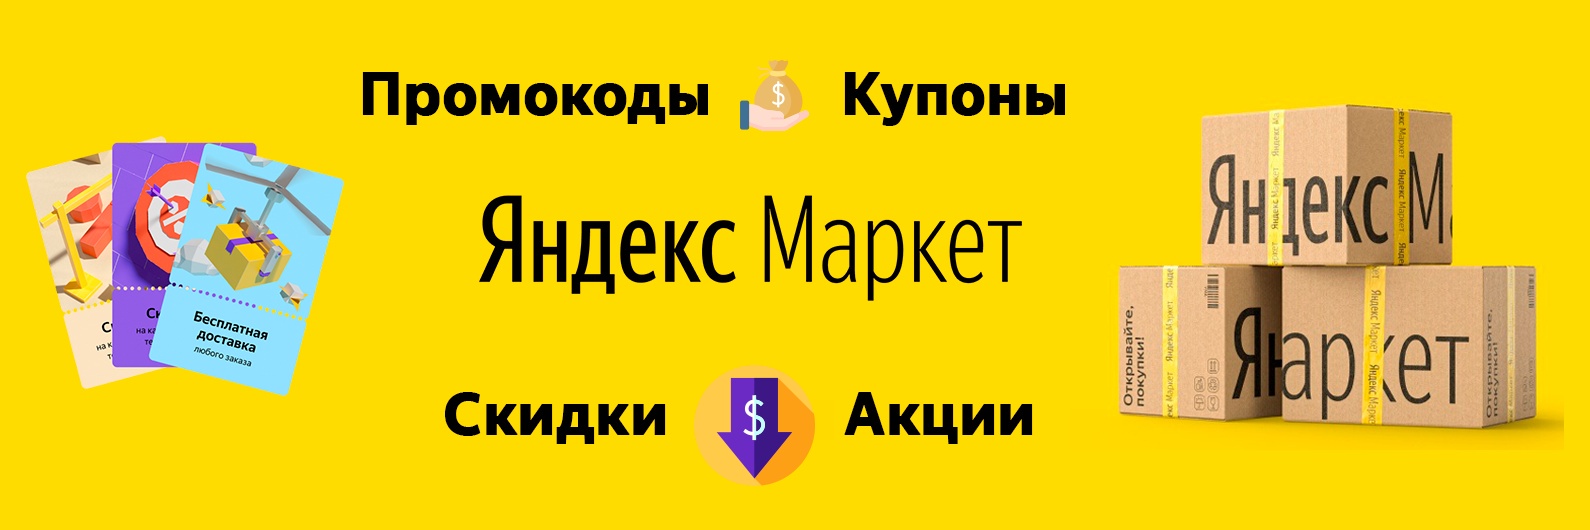 Купоны Яндекс маркет